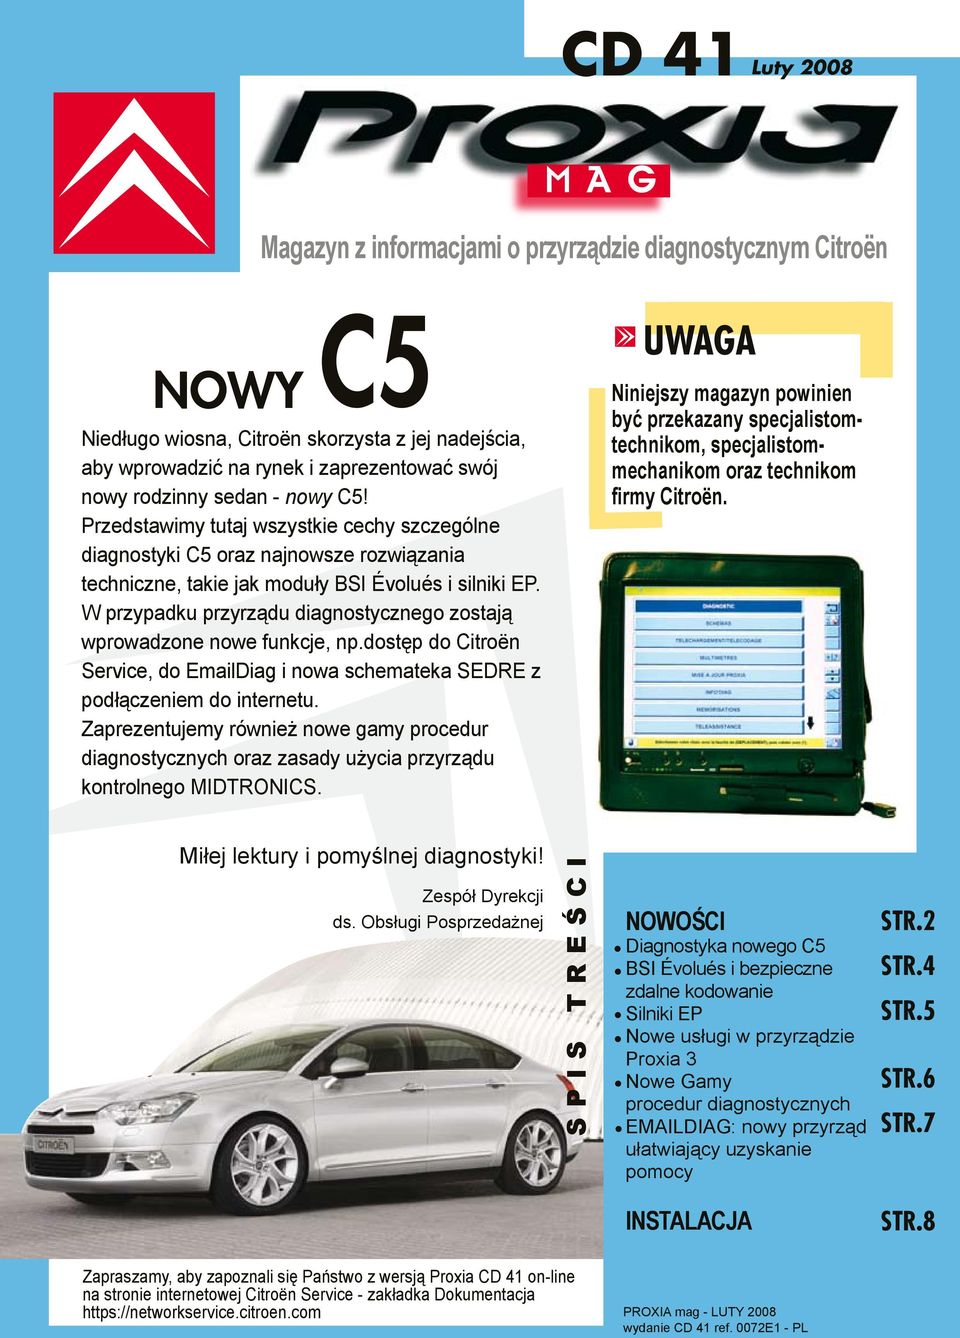 CD 41 Luty Nowy UWAGA. Magazyn z informacjami o przyrządzie diagnostycznym  Citroën - PDF Darmowe pobieranie